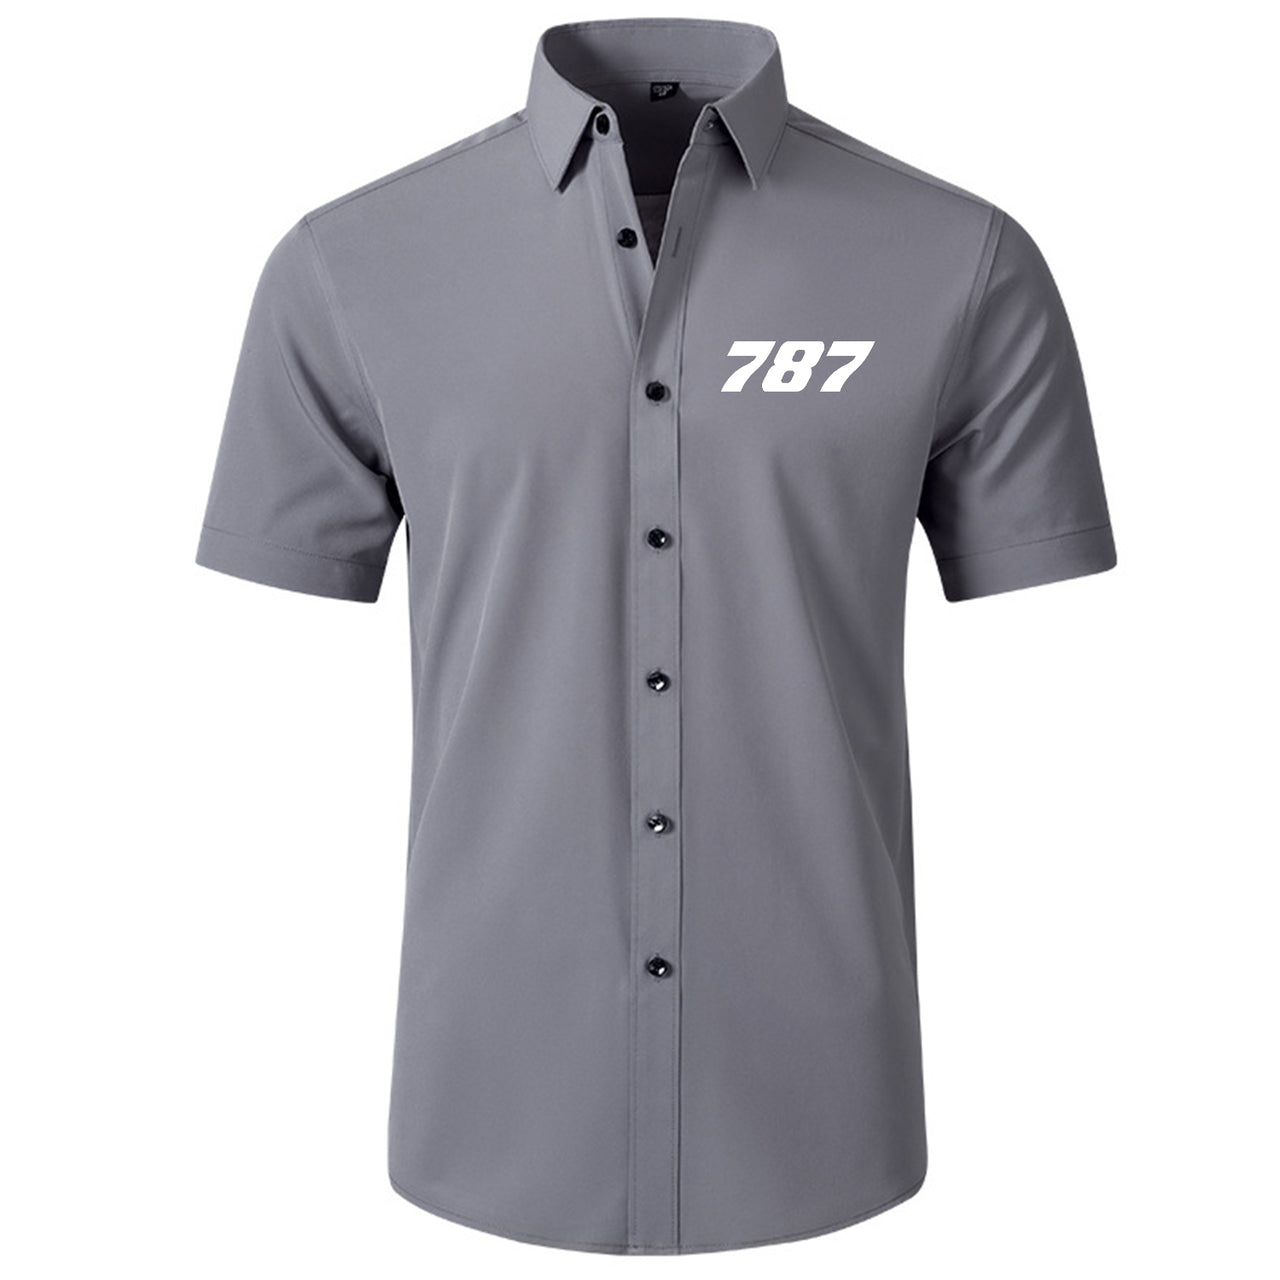 787 Flat Text Designed Short Sleeve Shirts